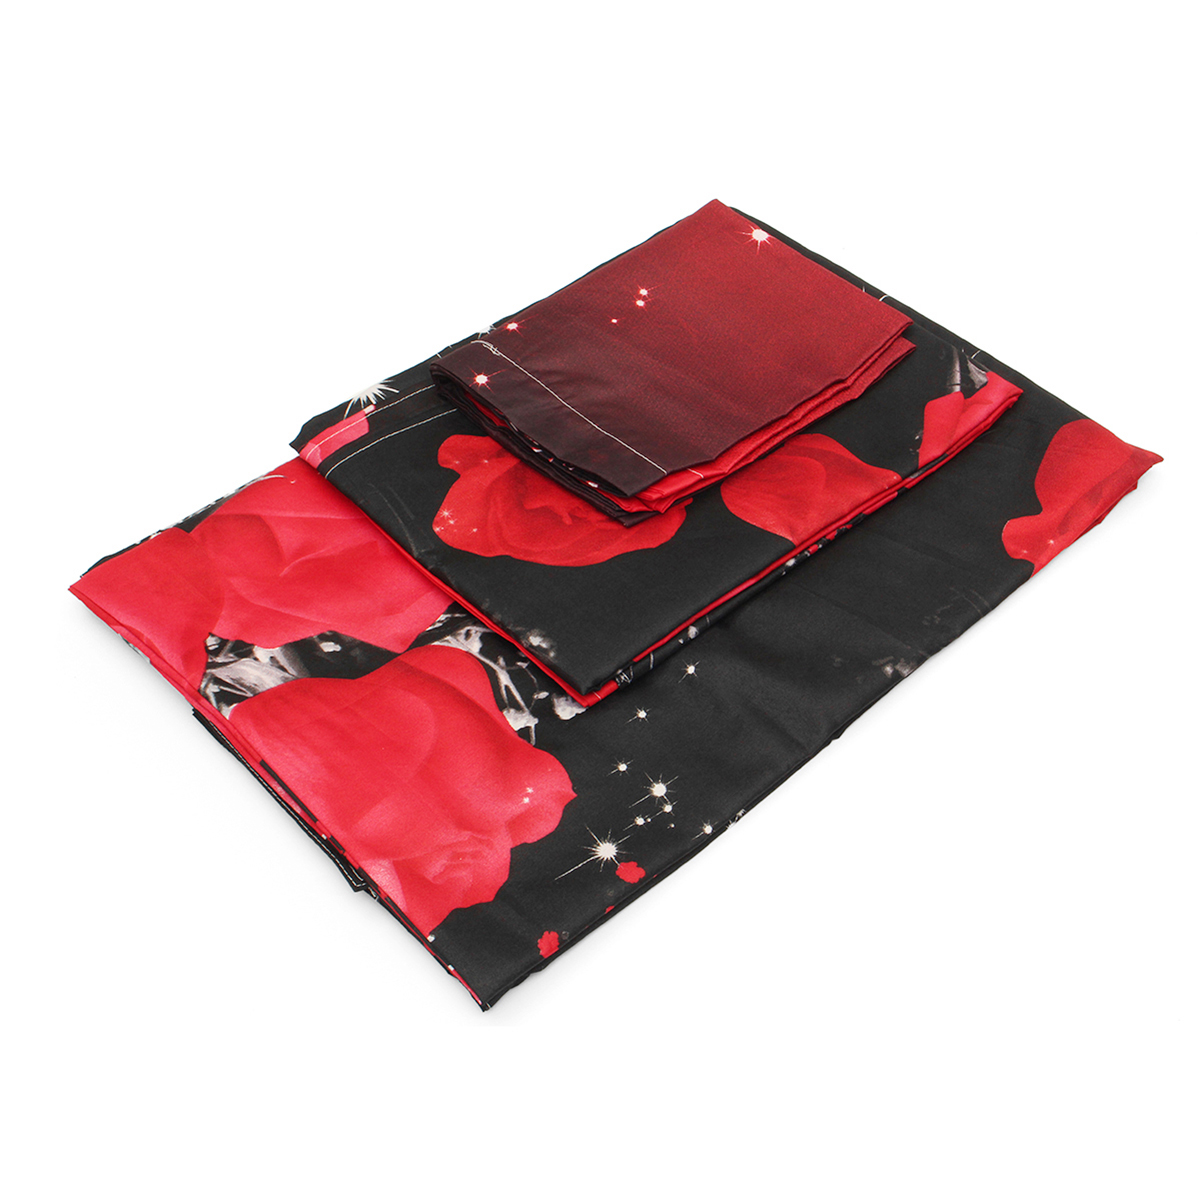 4-Pcs-3D-Images-Bedding-Sets-Duvet-Set-1-Quilt-Cover-1-Fitted-Sheet-2-Pillow-Cases-1353508-3